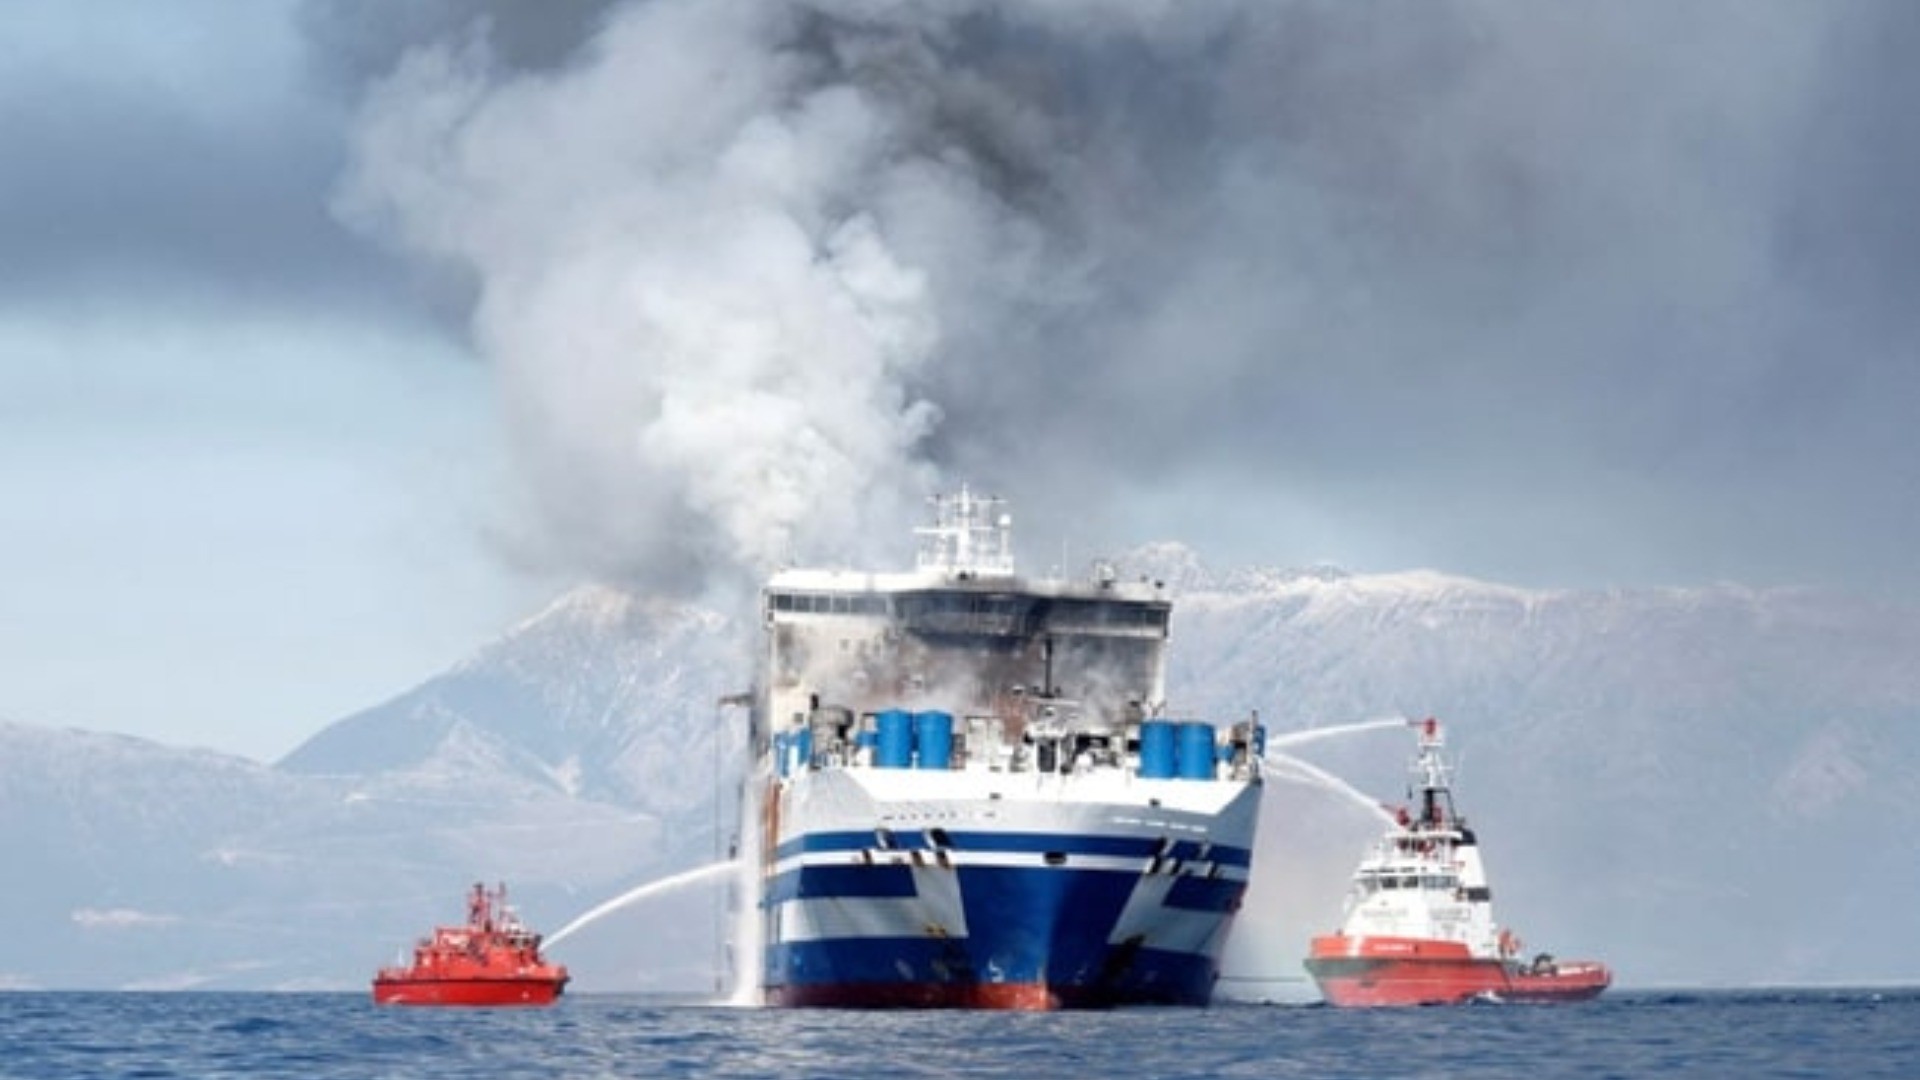 Svezia, incendio su un traghetto: a bordo ci sono 300 persone, evacuazione in corso